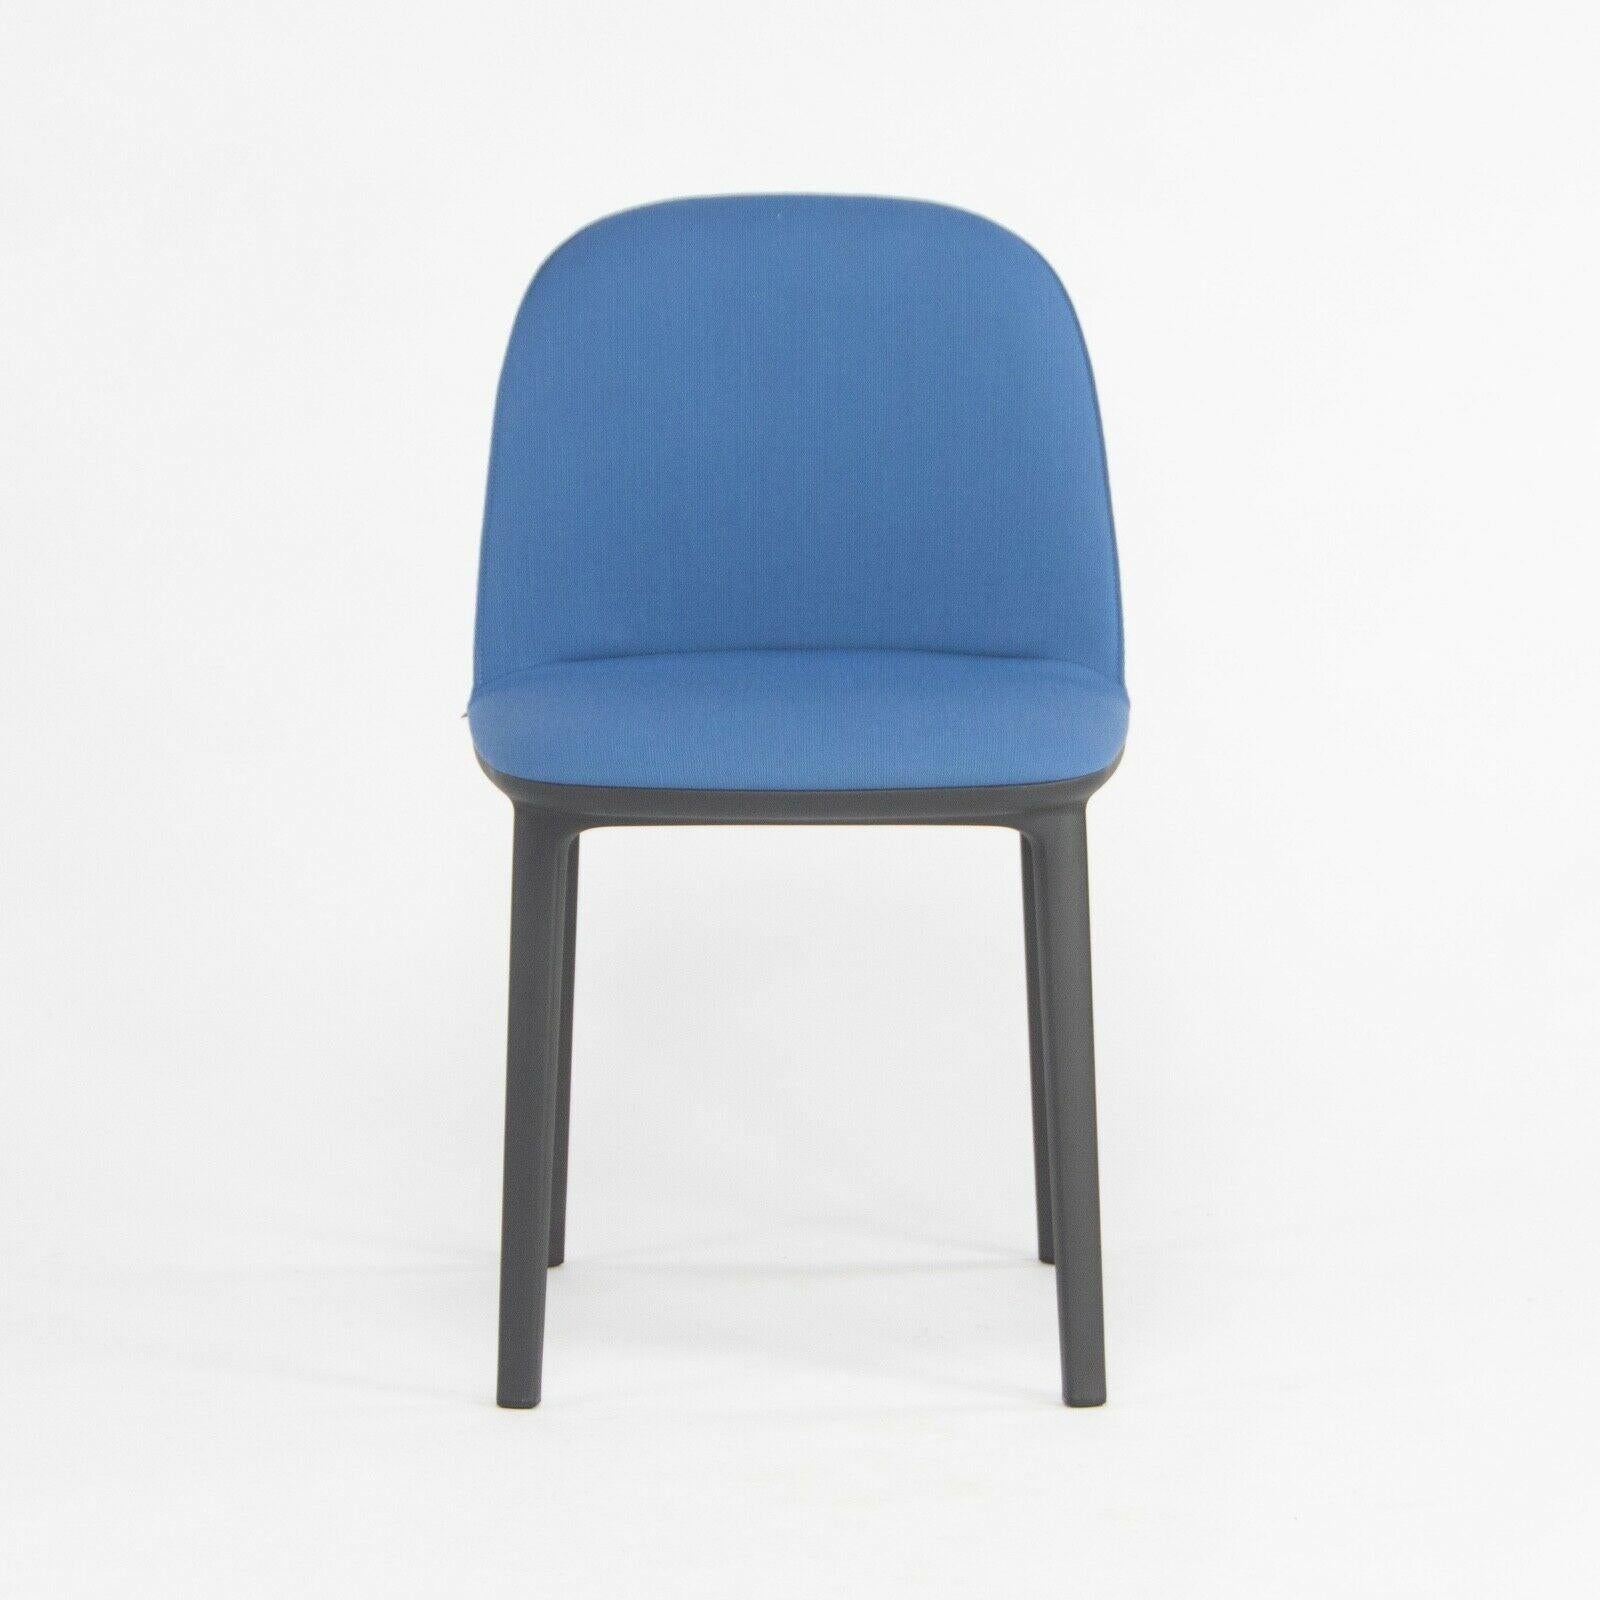 La chaise d'appoint Softshell, conçue par Ronan et Erwan Bouroullec et produite par Vitra, est proposée à la vente. Cette chaise a été construite avec une base en plastique noir et une assise recouverte d'un tissu bleu clair. L'état est décrit comme